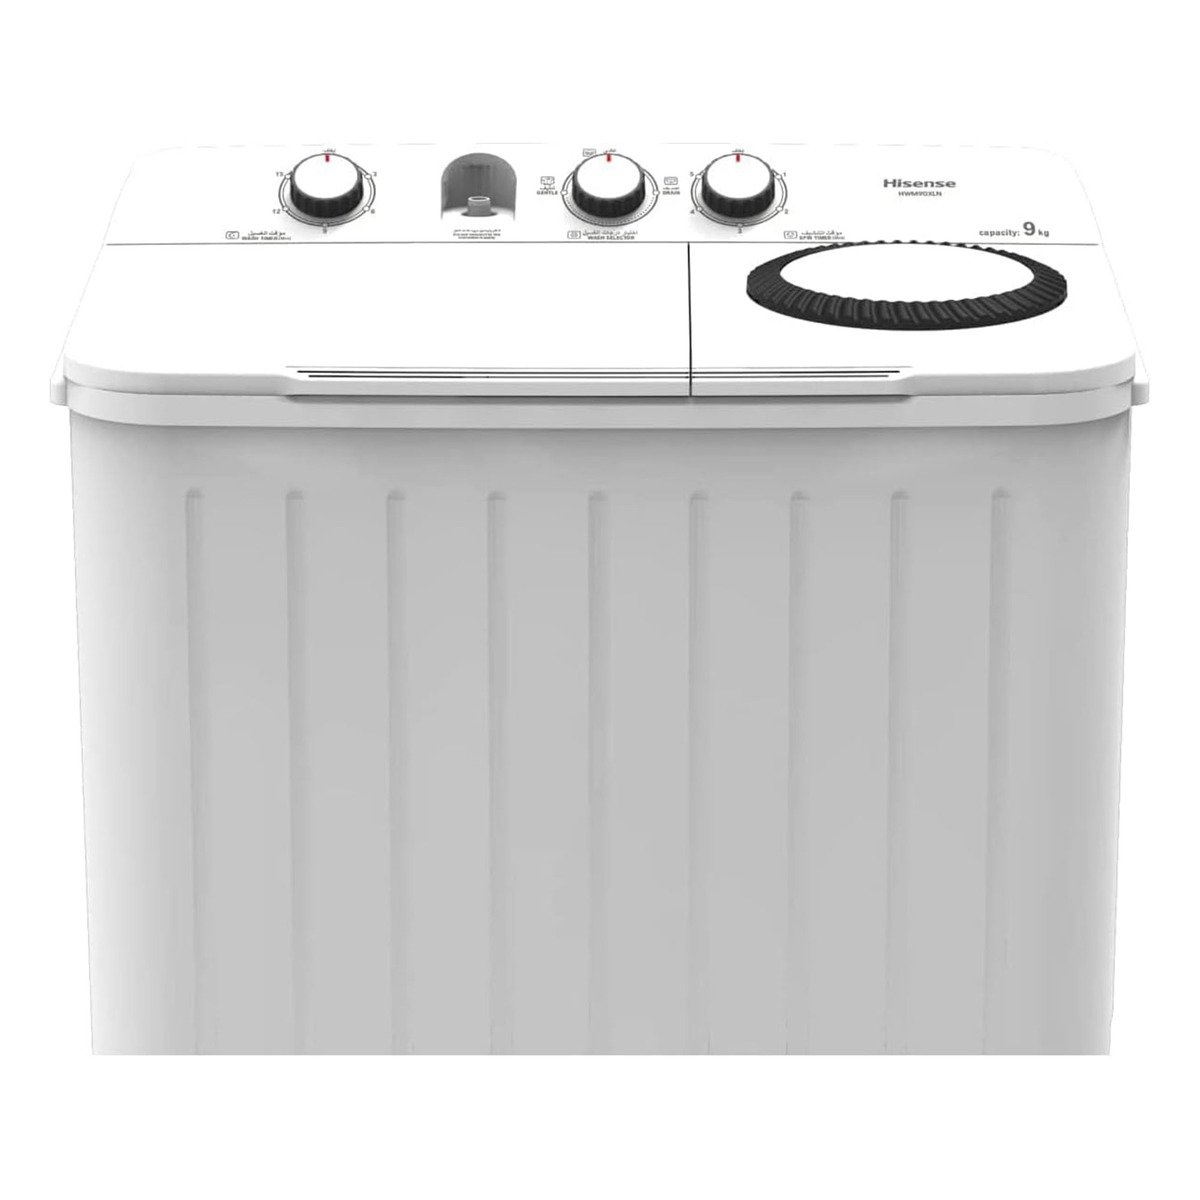 Hisense Twin Tub Semi Automatic Washing Machine, 9 kg, White, WSBE901